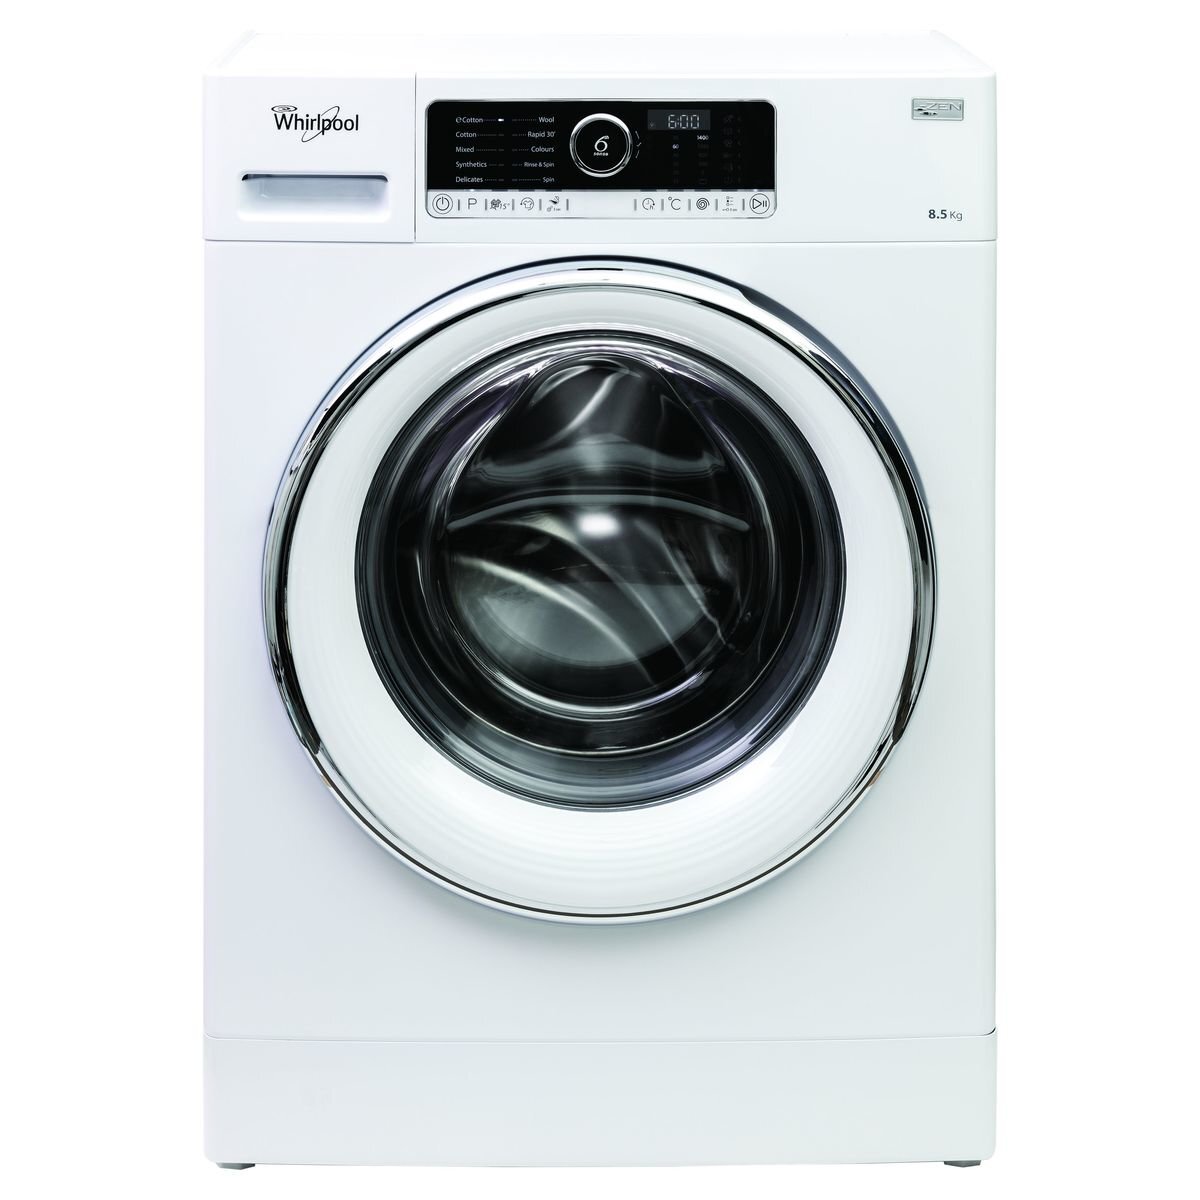 Bangladesh Complex spiritueel Whirlpool 8.5kg Front Load Washing Machine FSCR10420 | Appliances Online